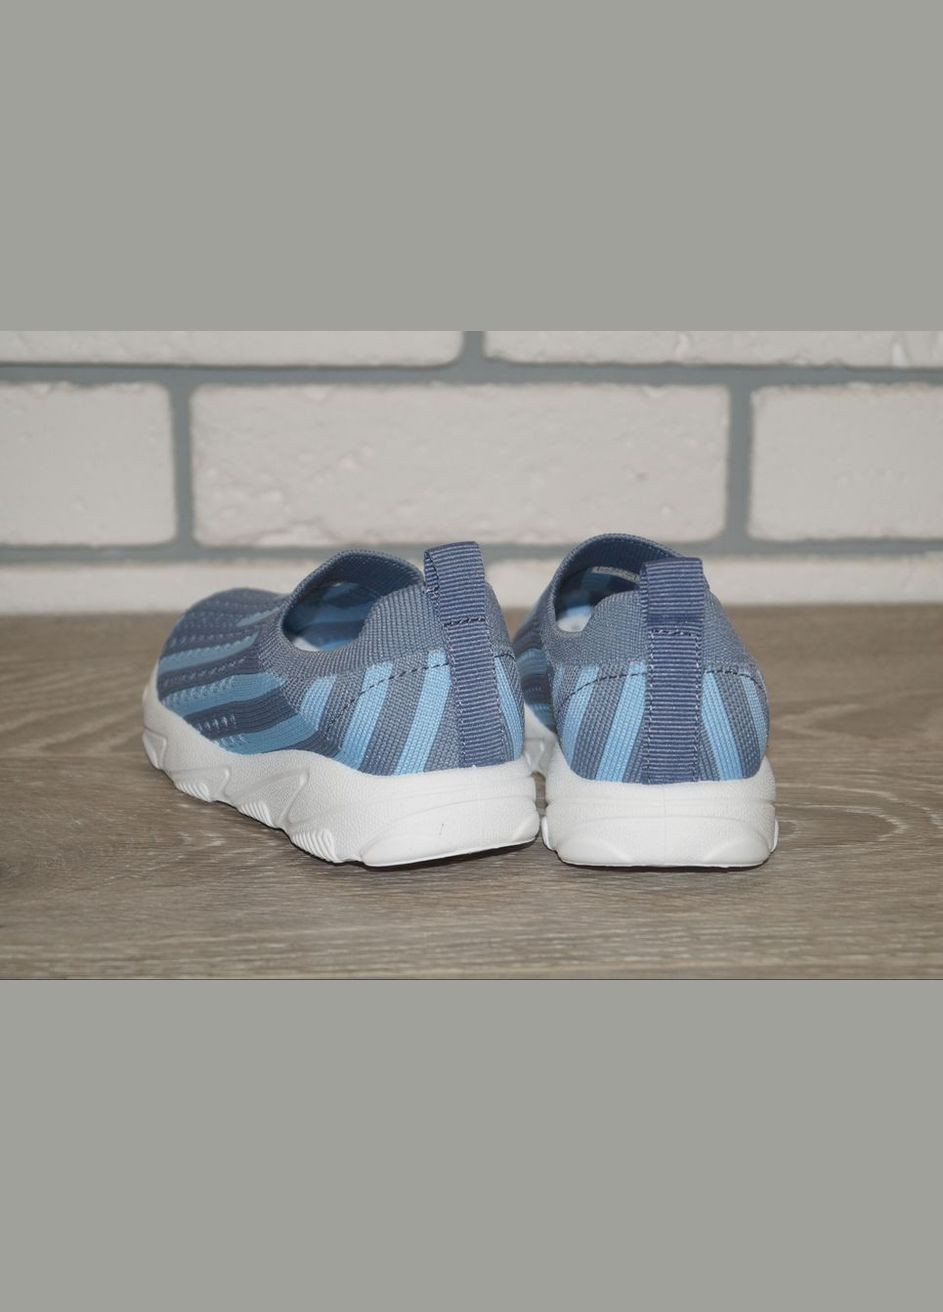 Голубые демисезонные кроссовки текстильные для мальчика голубые М.Мичи